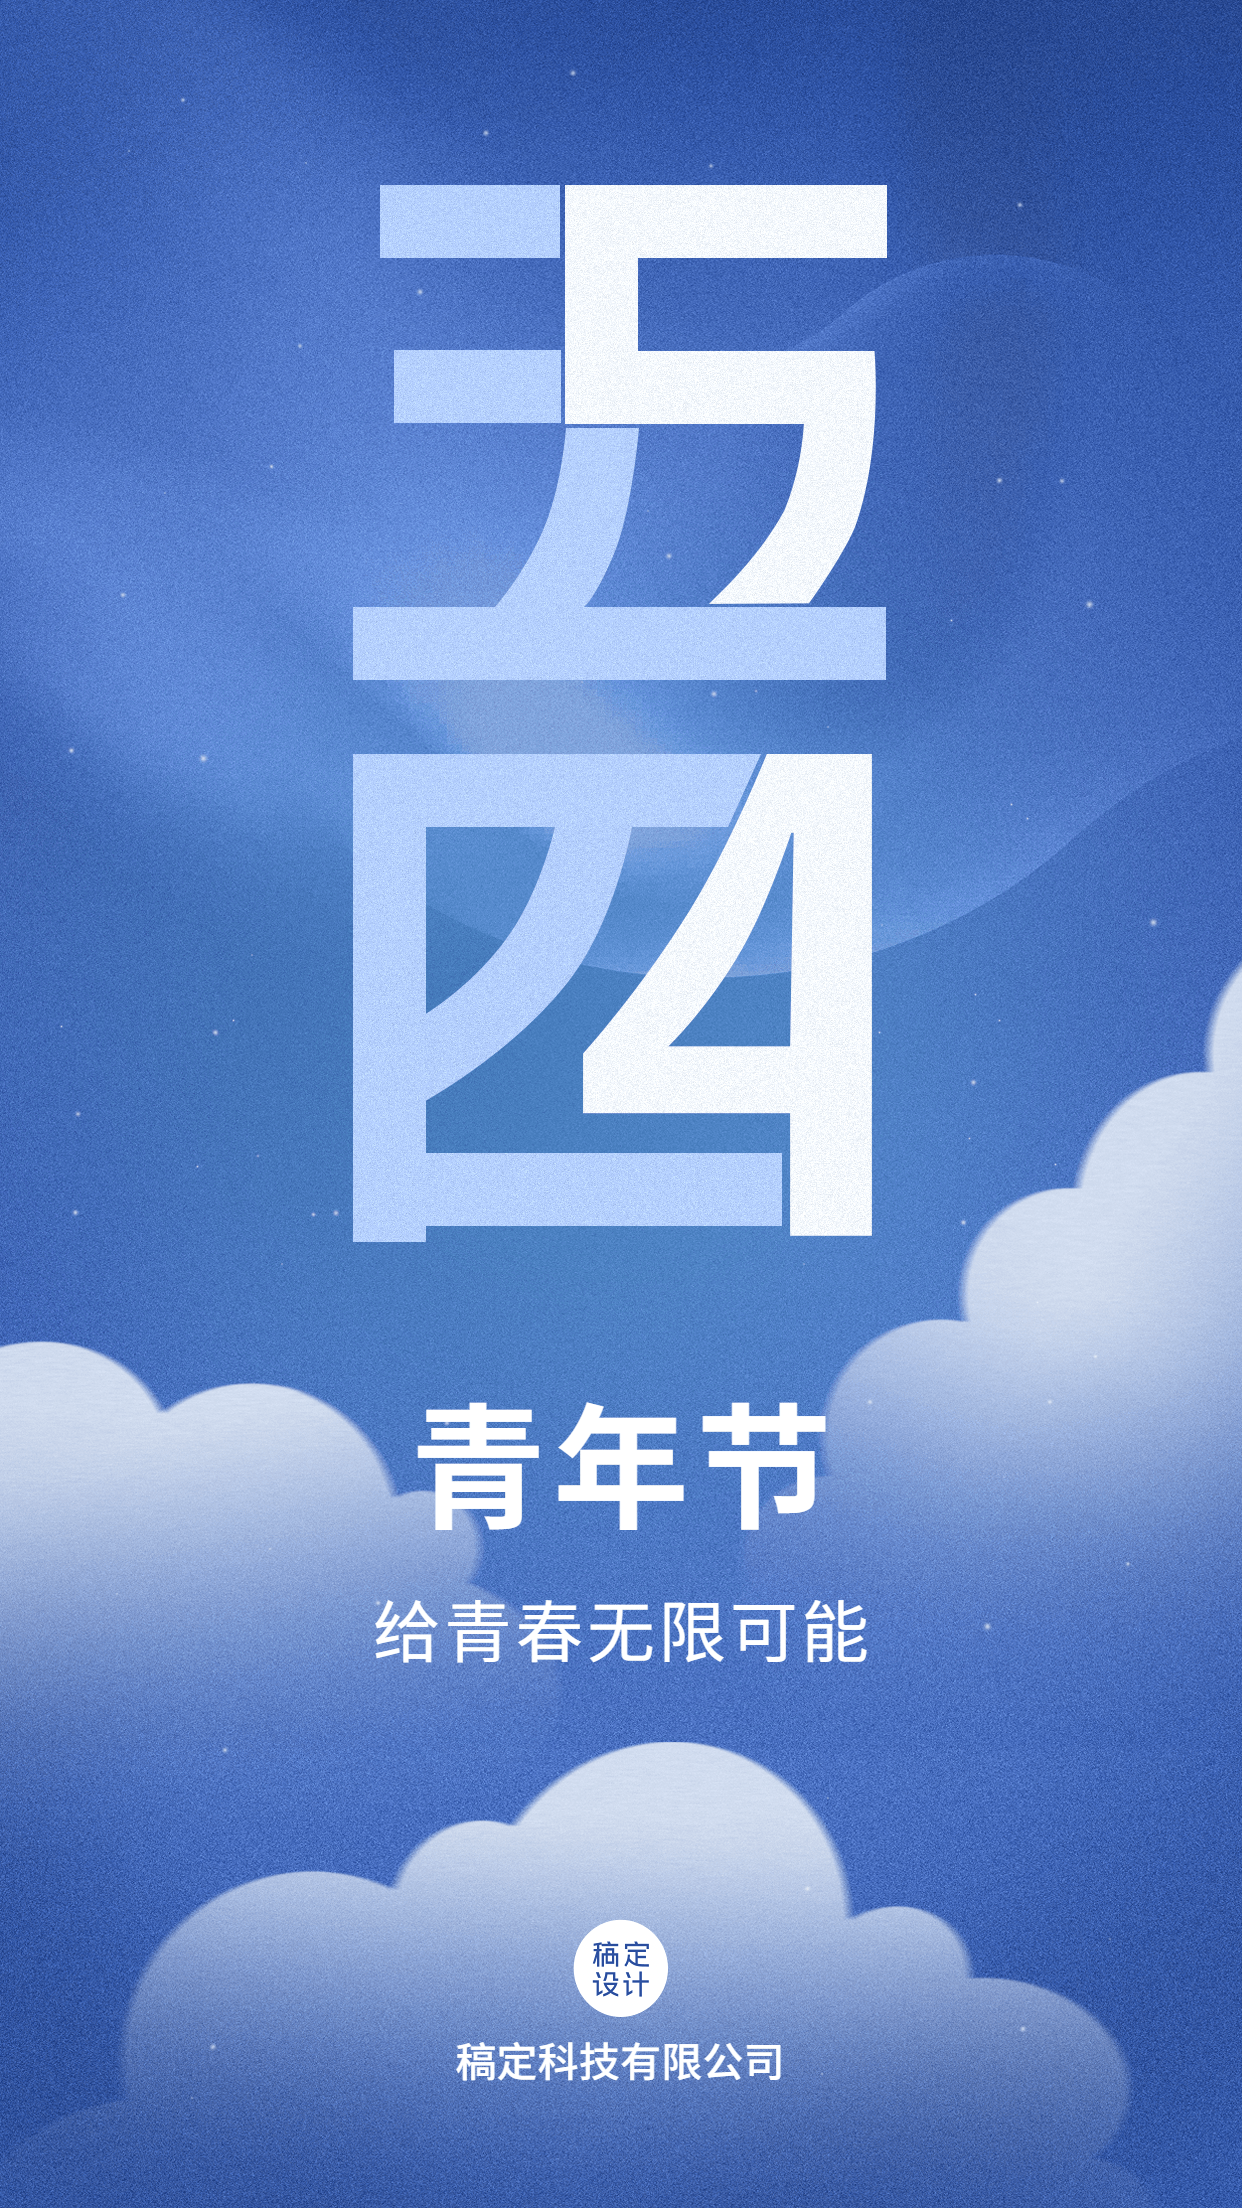 五四青年节祝福企业行政问候海报